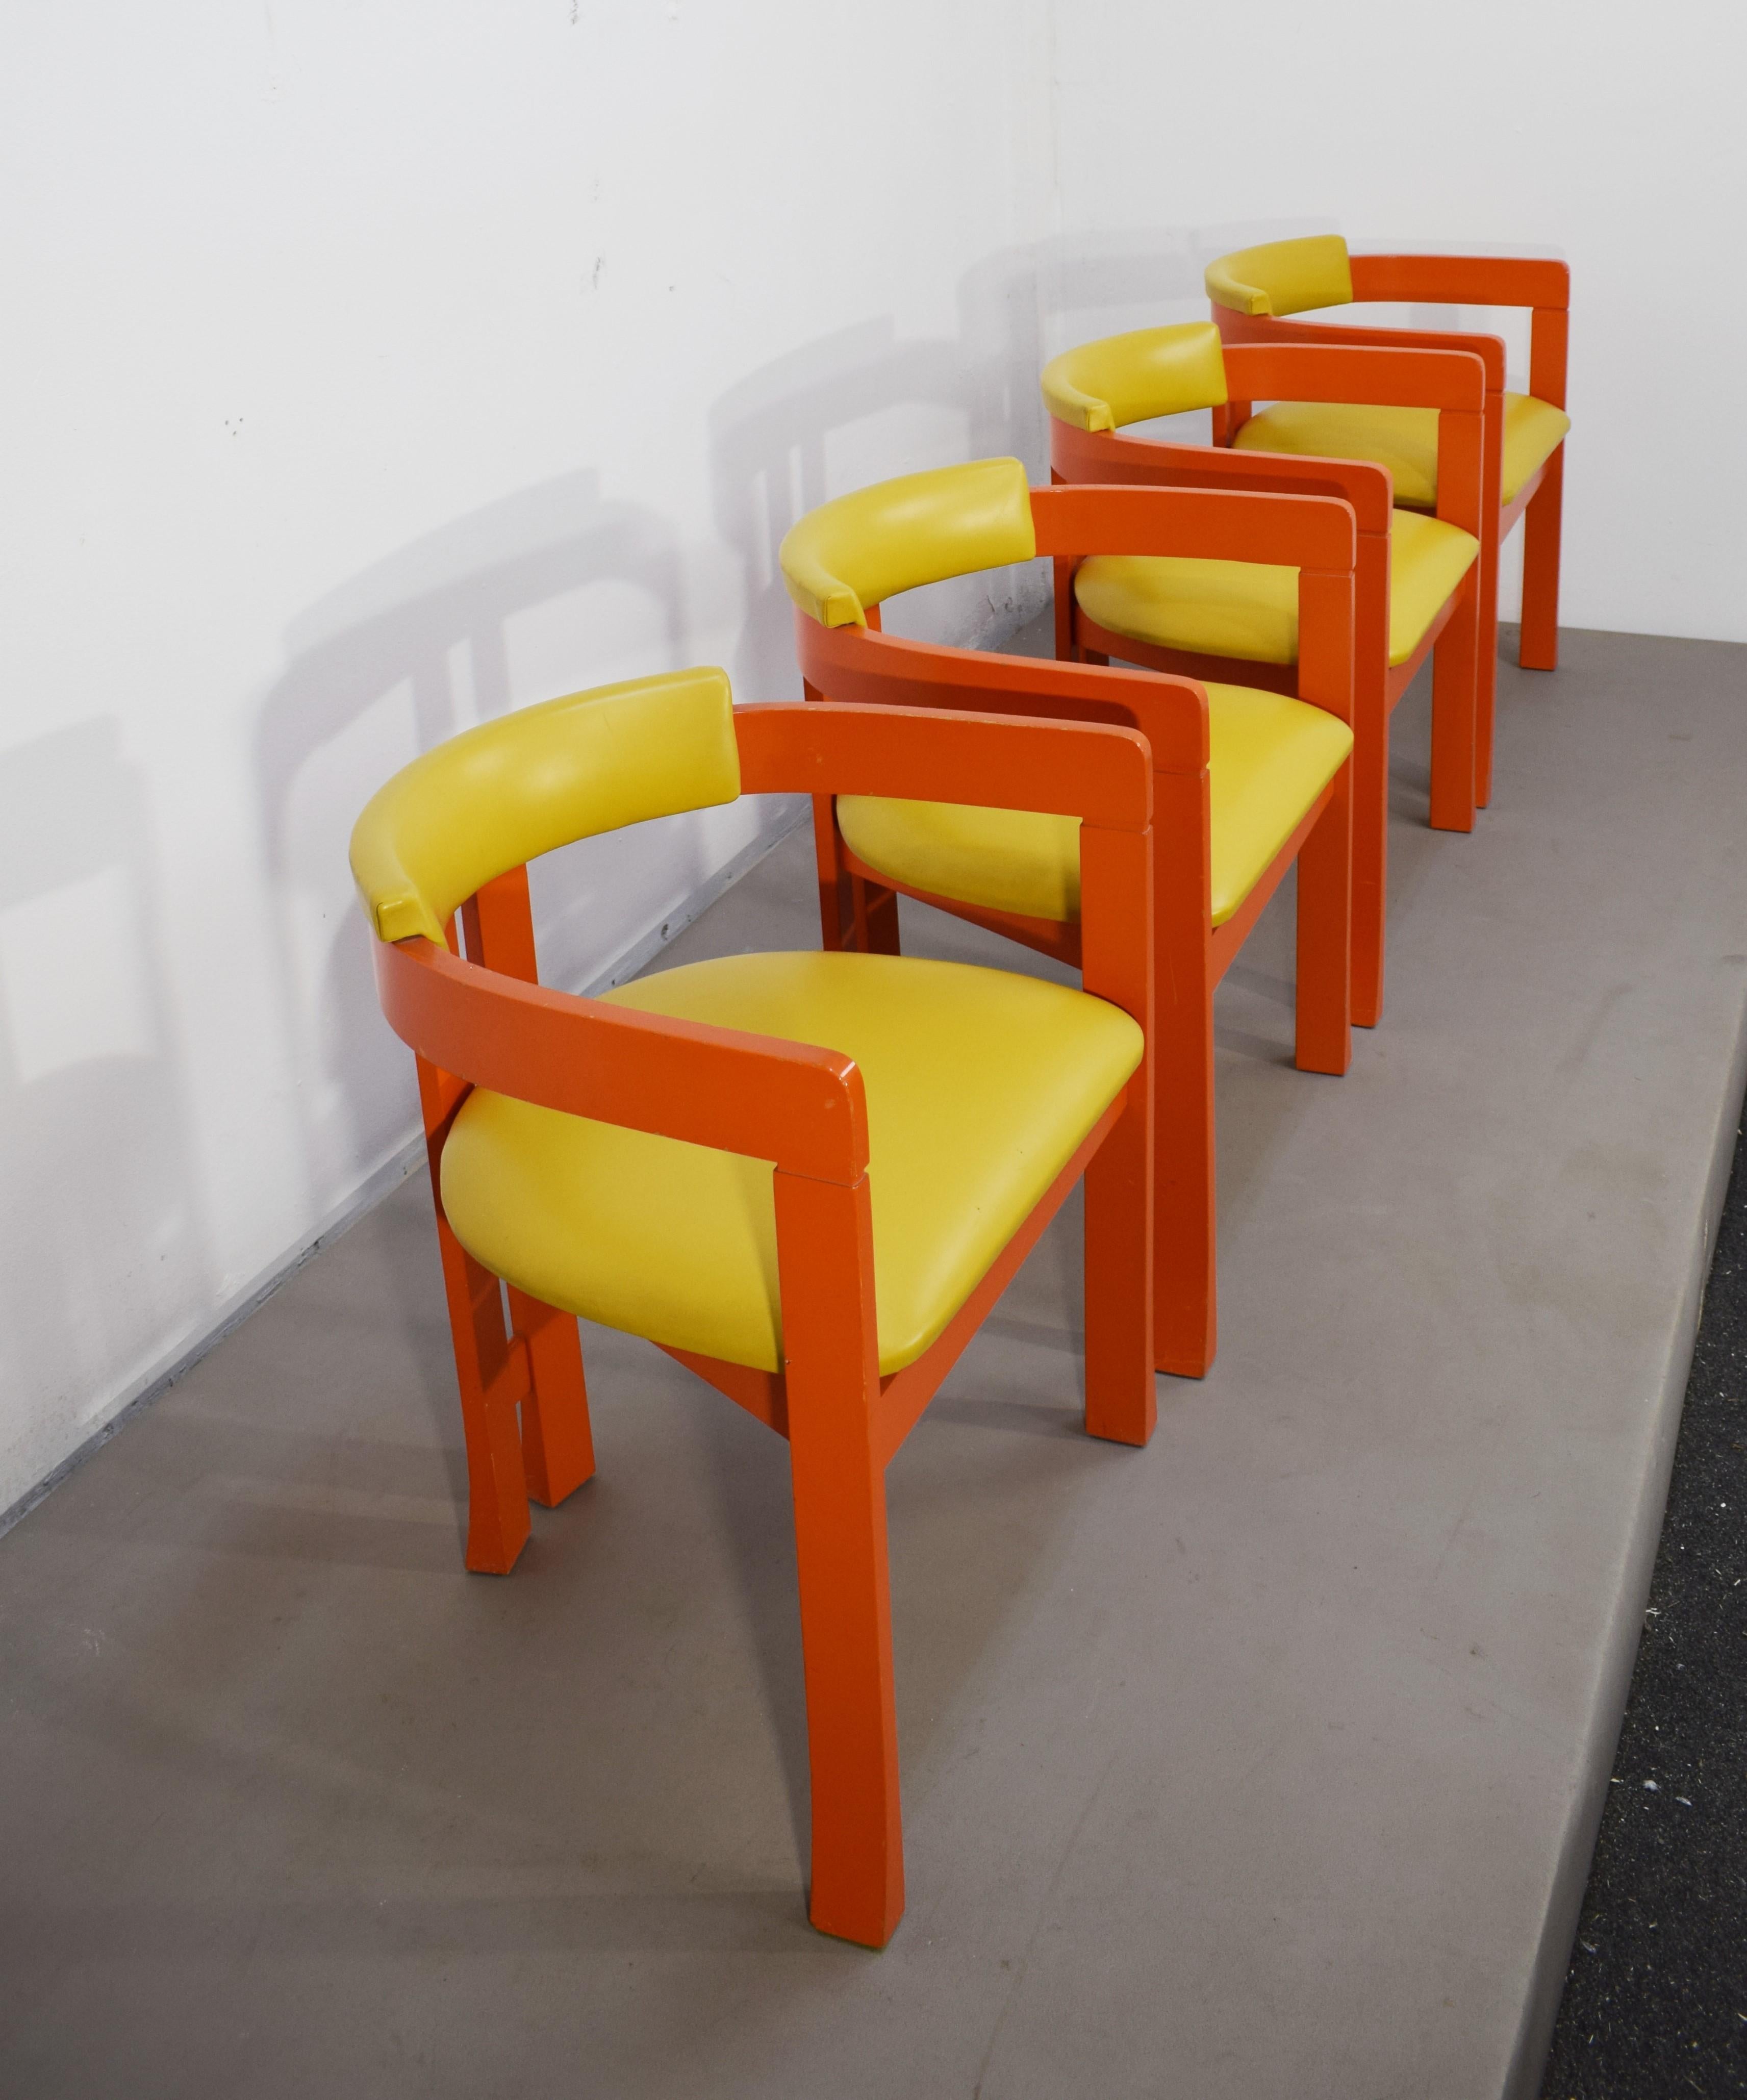 Ensemble de 4 chaises italiennes, Pi  Style grec, années 1960.
Dimensions : H= 66 cm ; L=57 cm ; P= 46 cm ; siège H= 42 cm. 